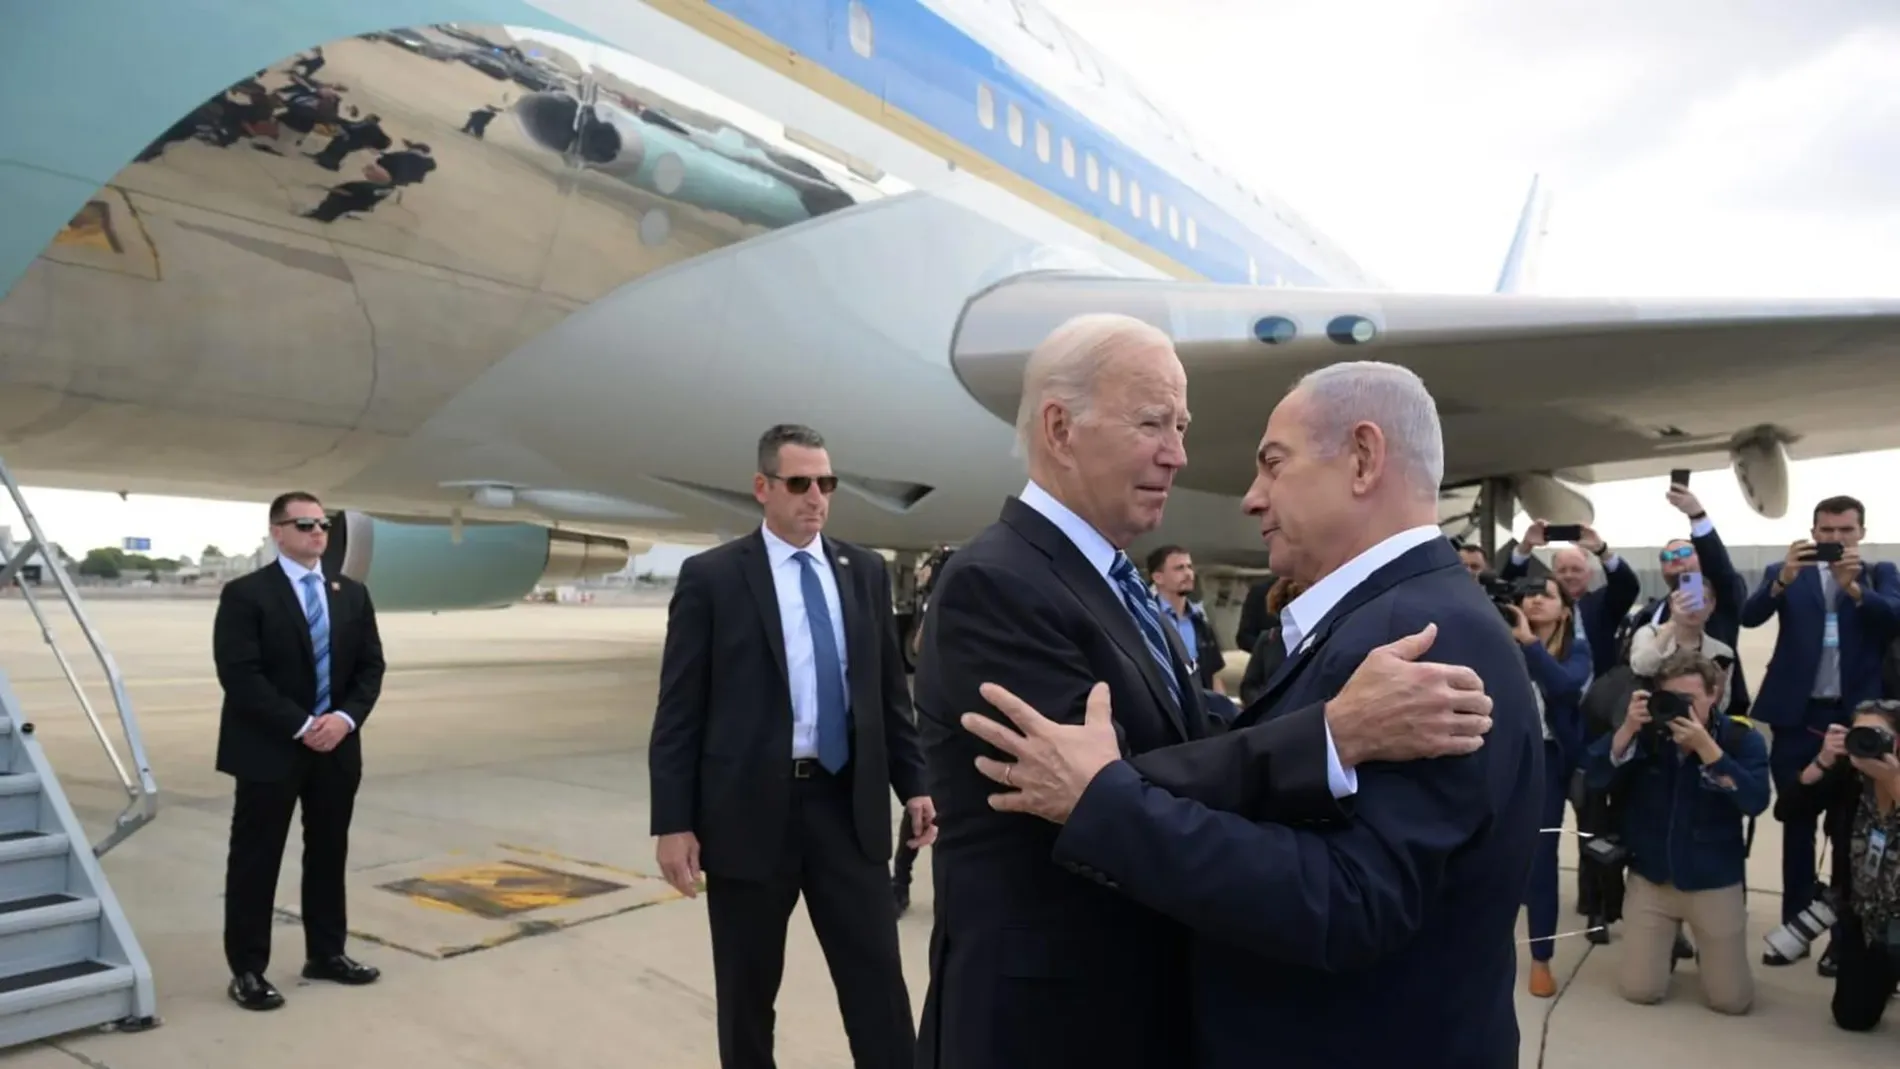 El primer ministro israelí Benjamin Netanyahu da la bienvenida al presidente estadounidense Joe Biden en el Aeropuerto Internacional Ben-Gurion.